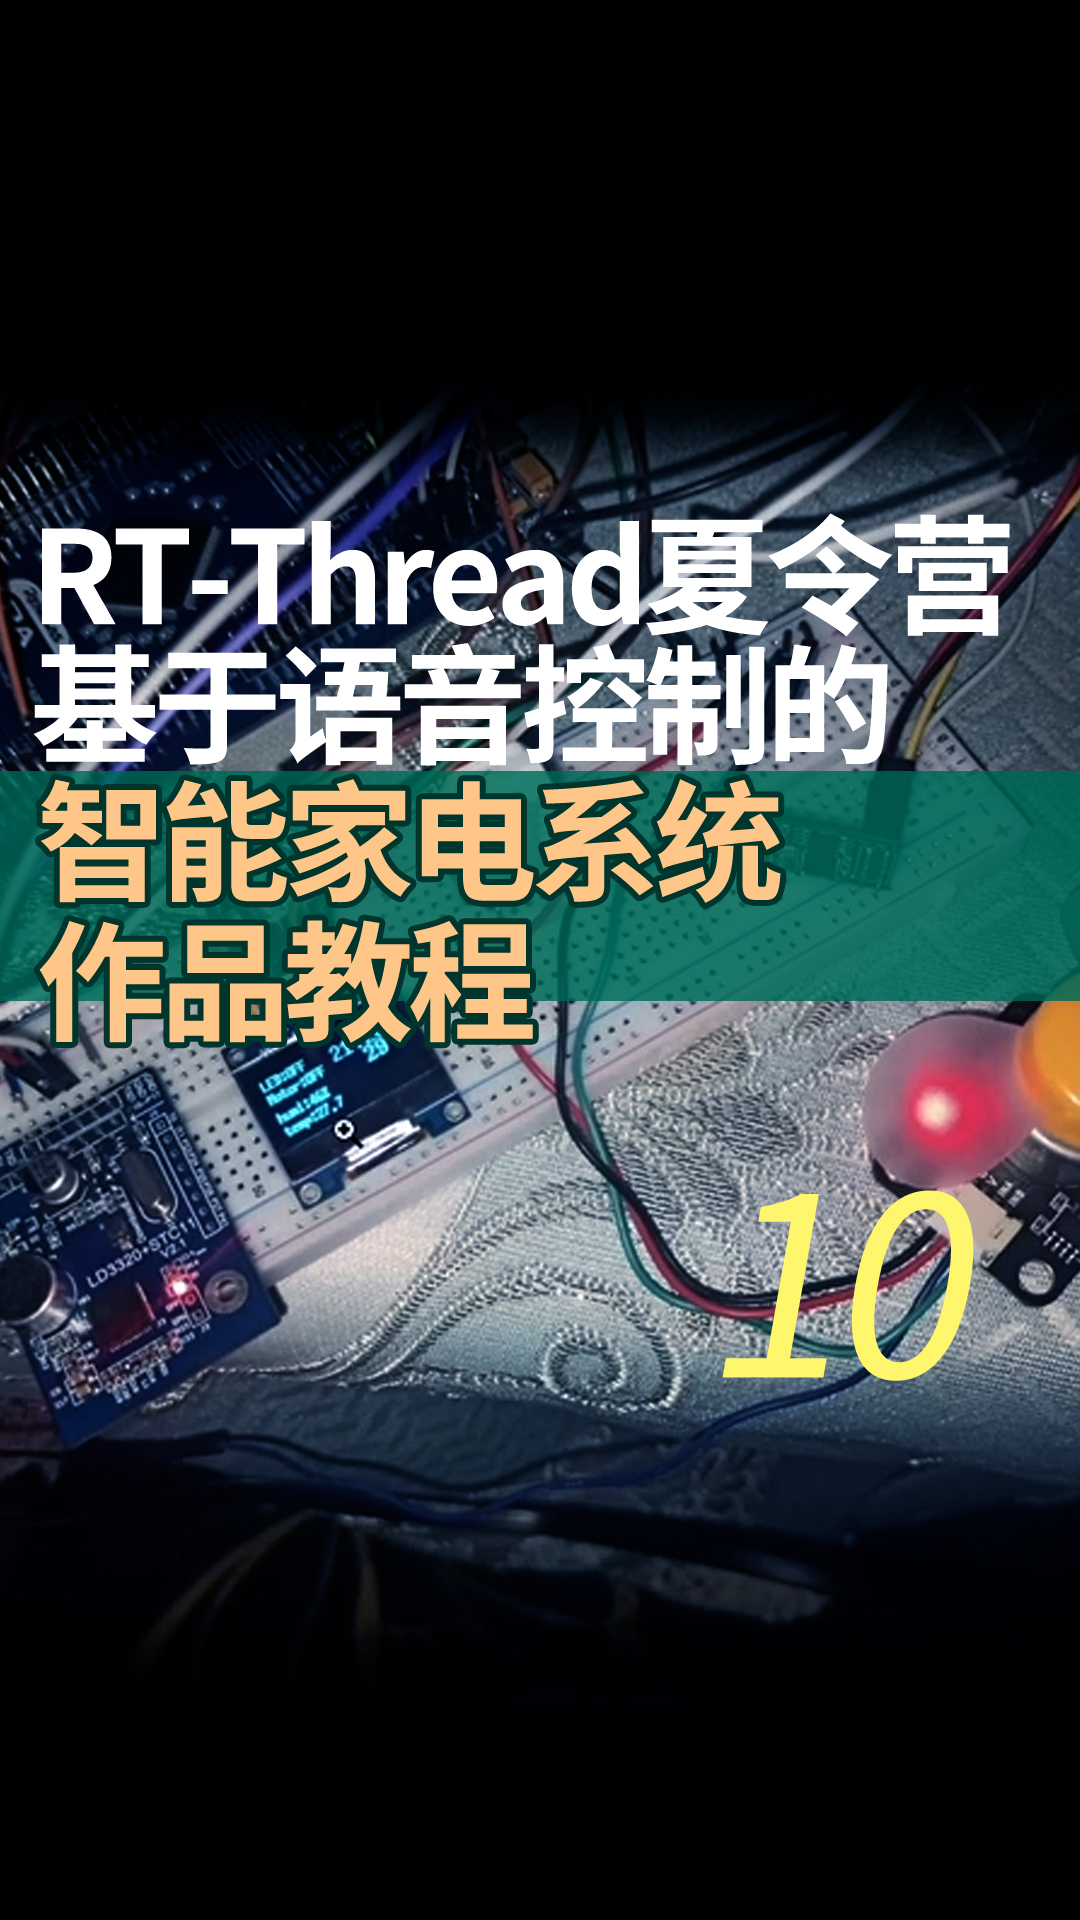 RT-Thread夏令营基于语音控制的智能家电系统作品教程 - 10 pin设备的使用